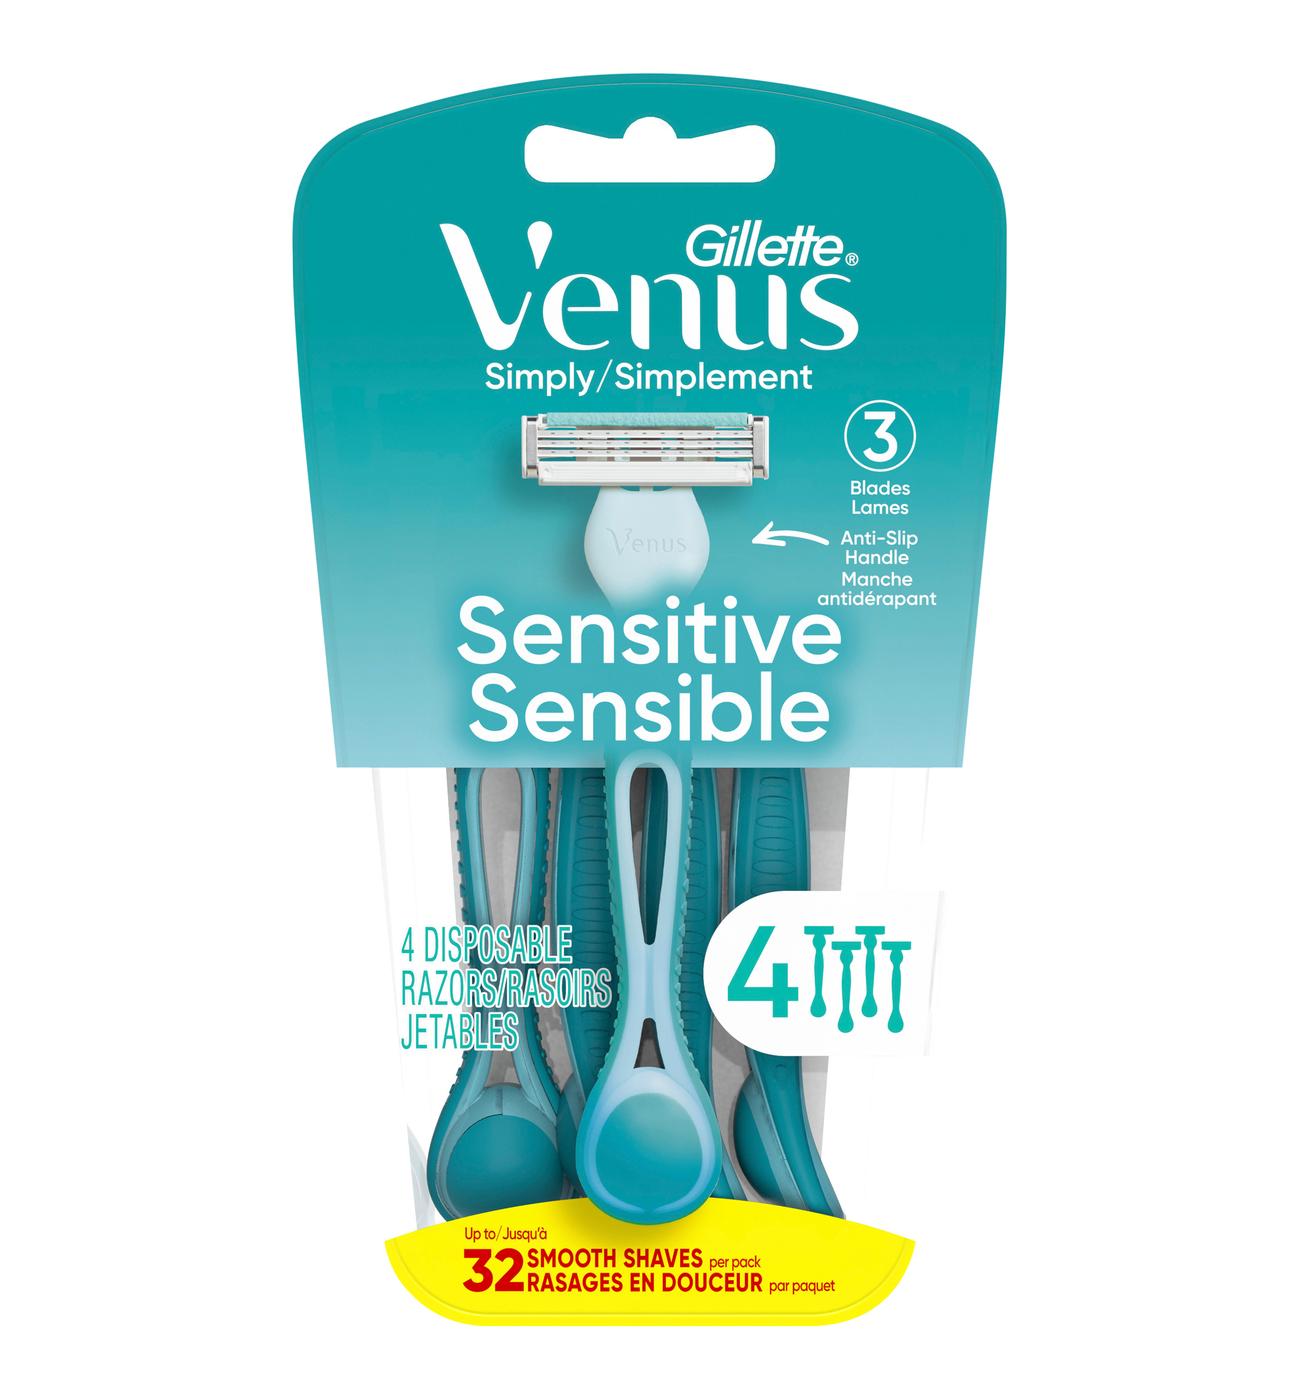 Gillette Venus Simply 3 Sensitive Disposable Razors - Shop Razors